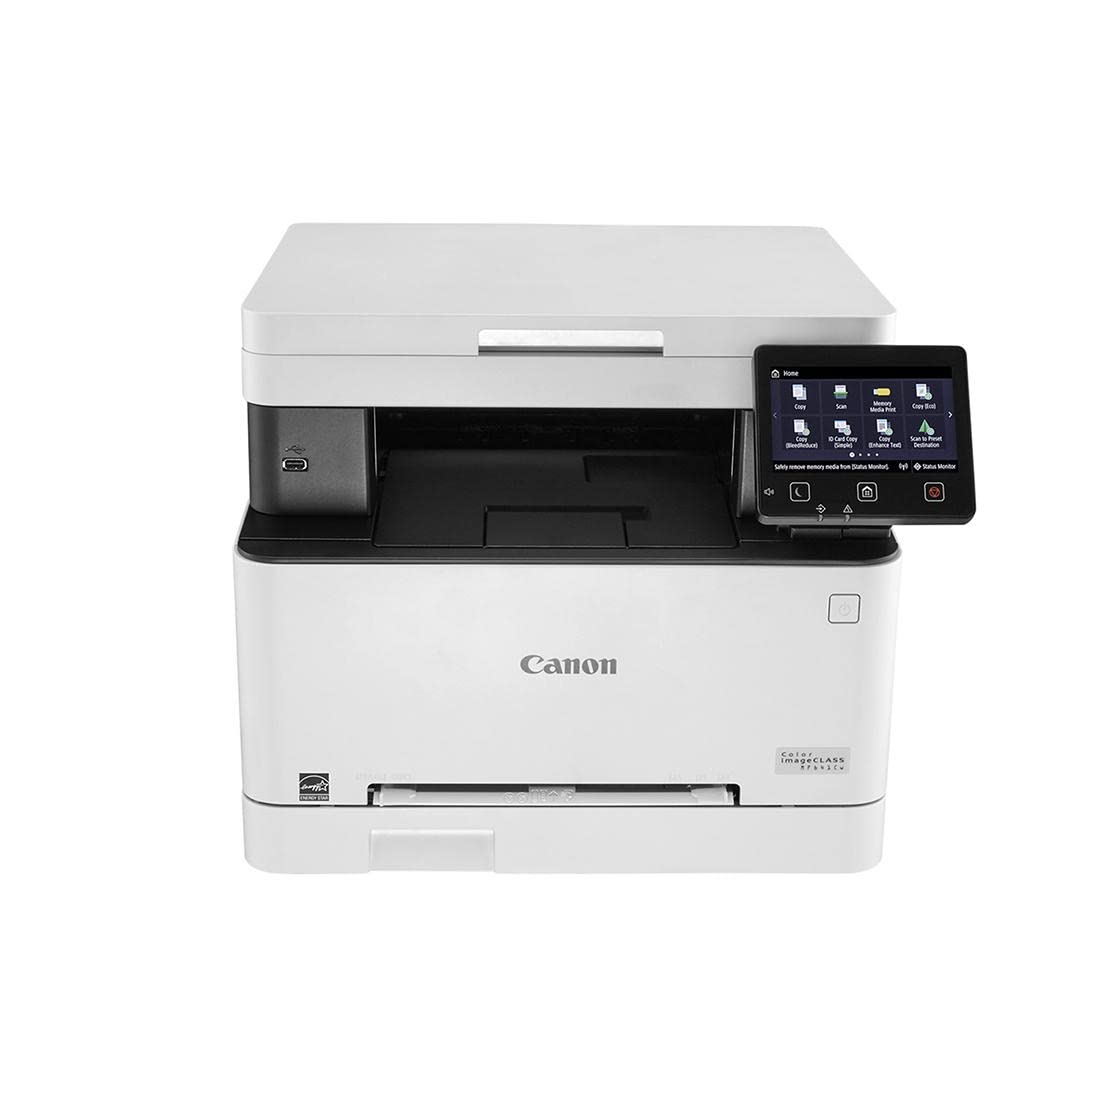 Canon カラー imageCLASS MF641Cw - 多機能、モバイル対応レーザー プリンター...